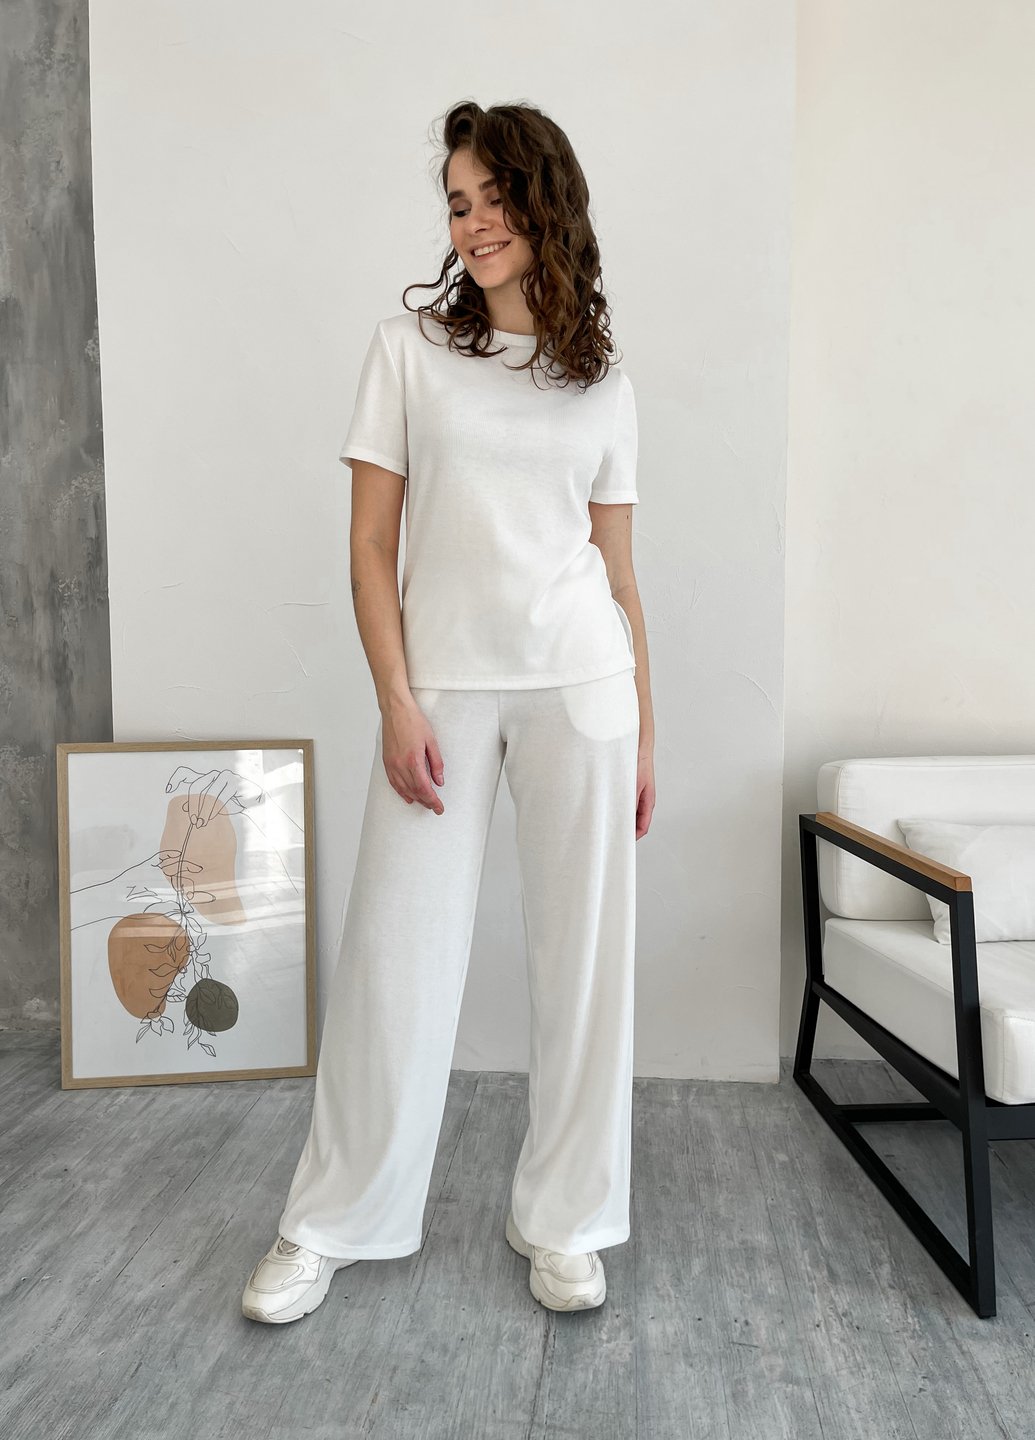 Купить Костюм женский в рубчик футболка со штанами клеш белый Merlini Монцано 100000526, размер XS-M (40-44) в интернет-магазине